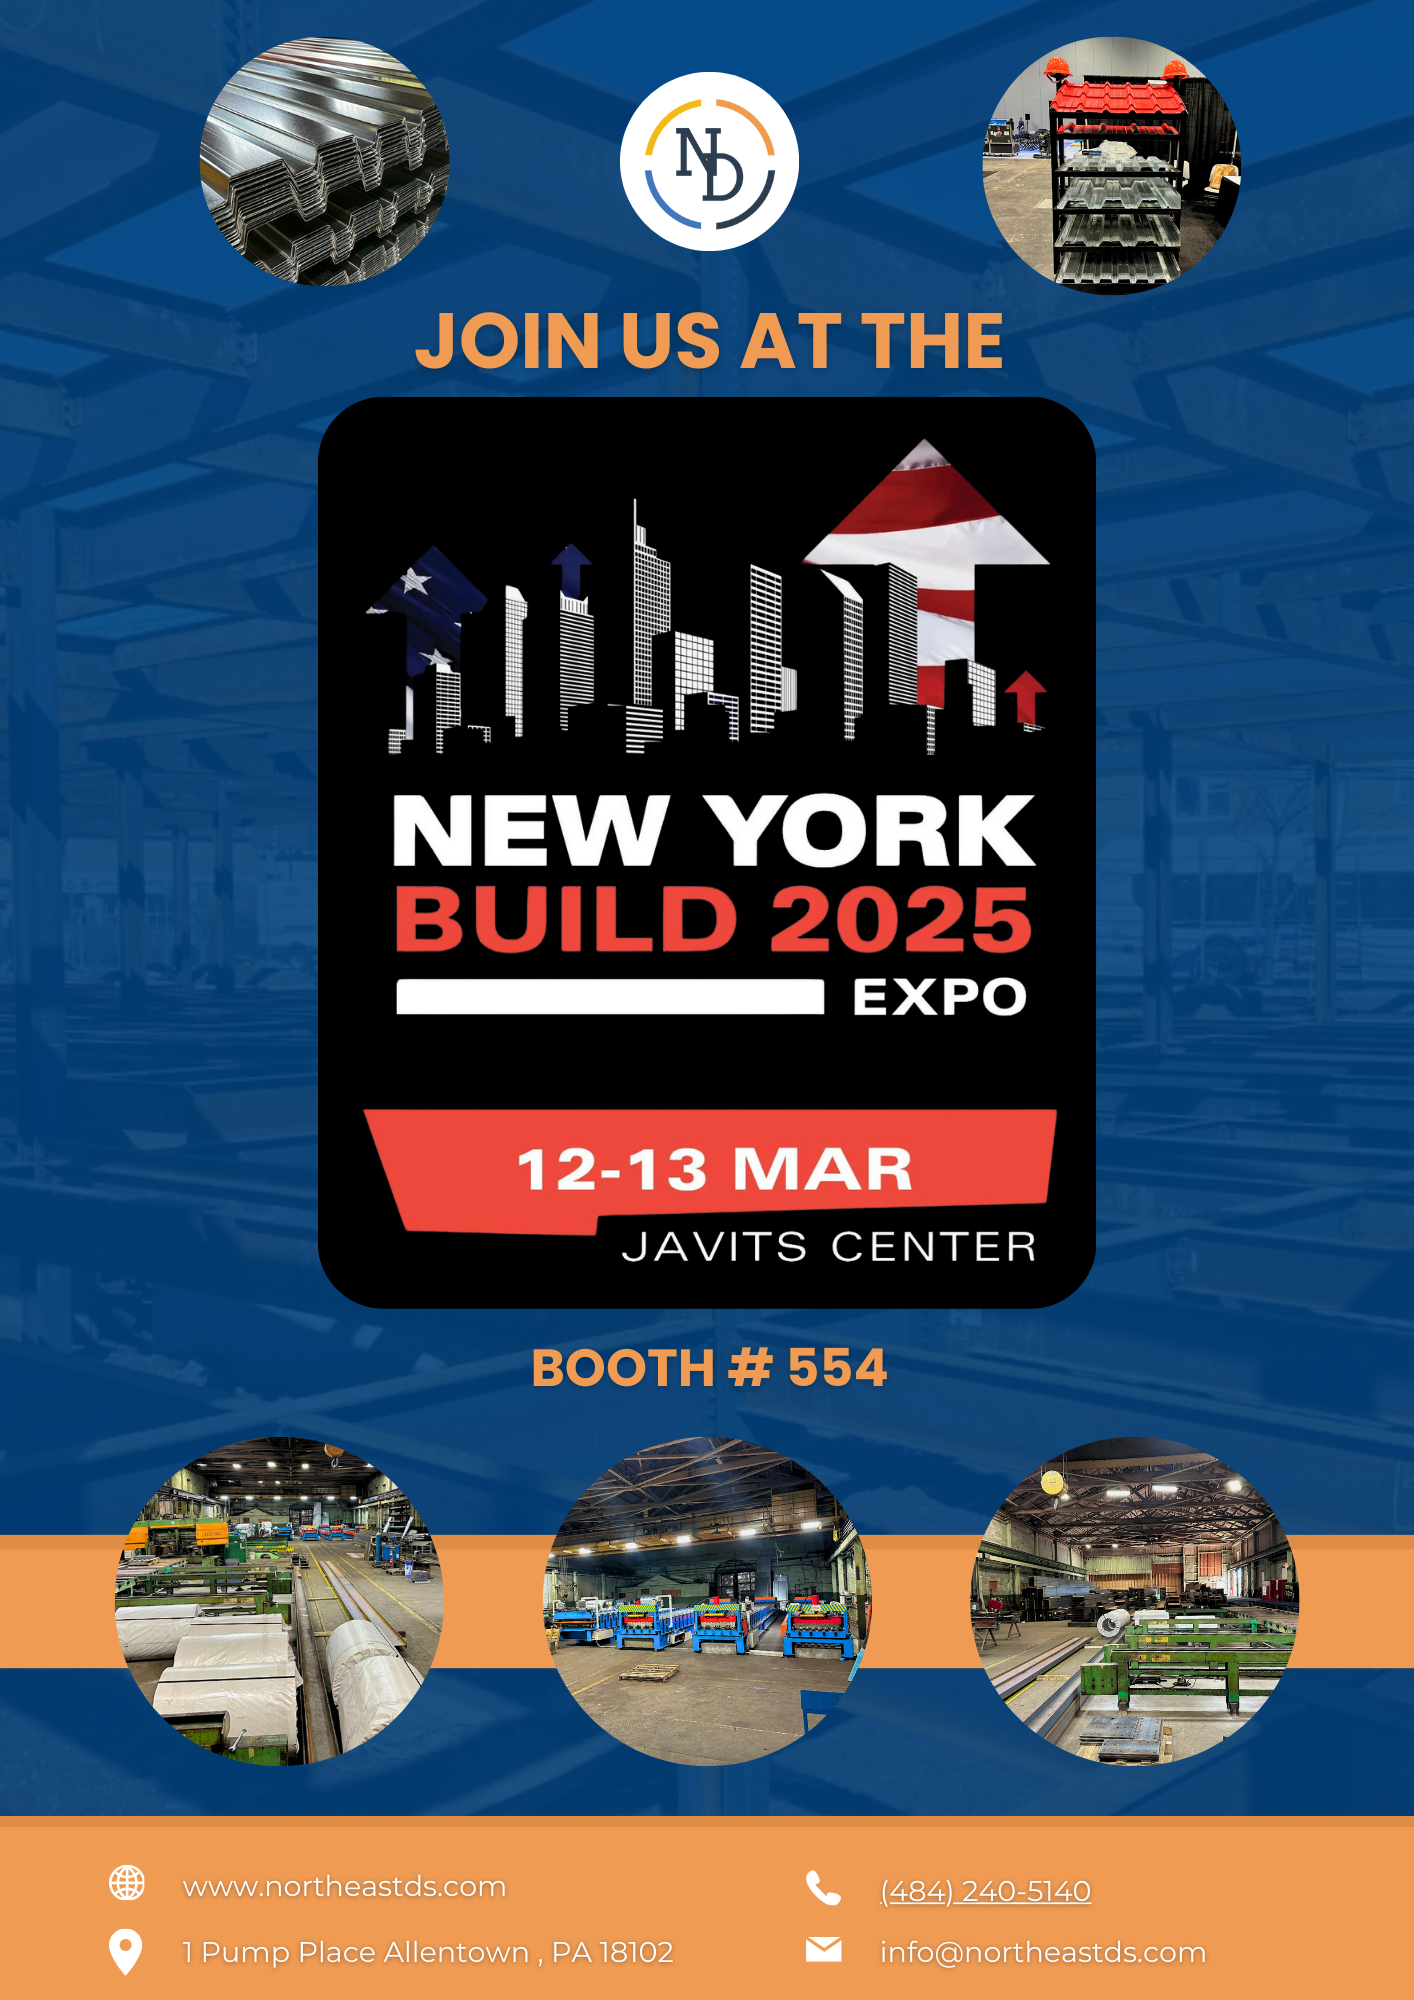 New York Build 2025 Expo